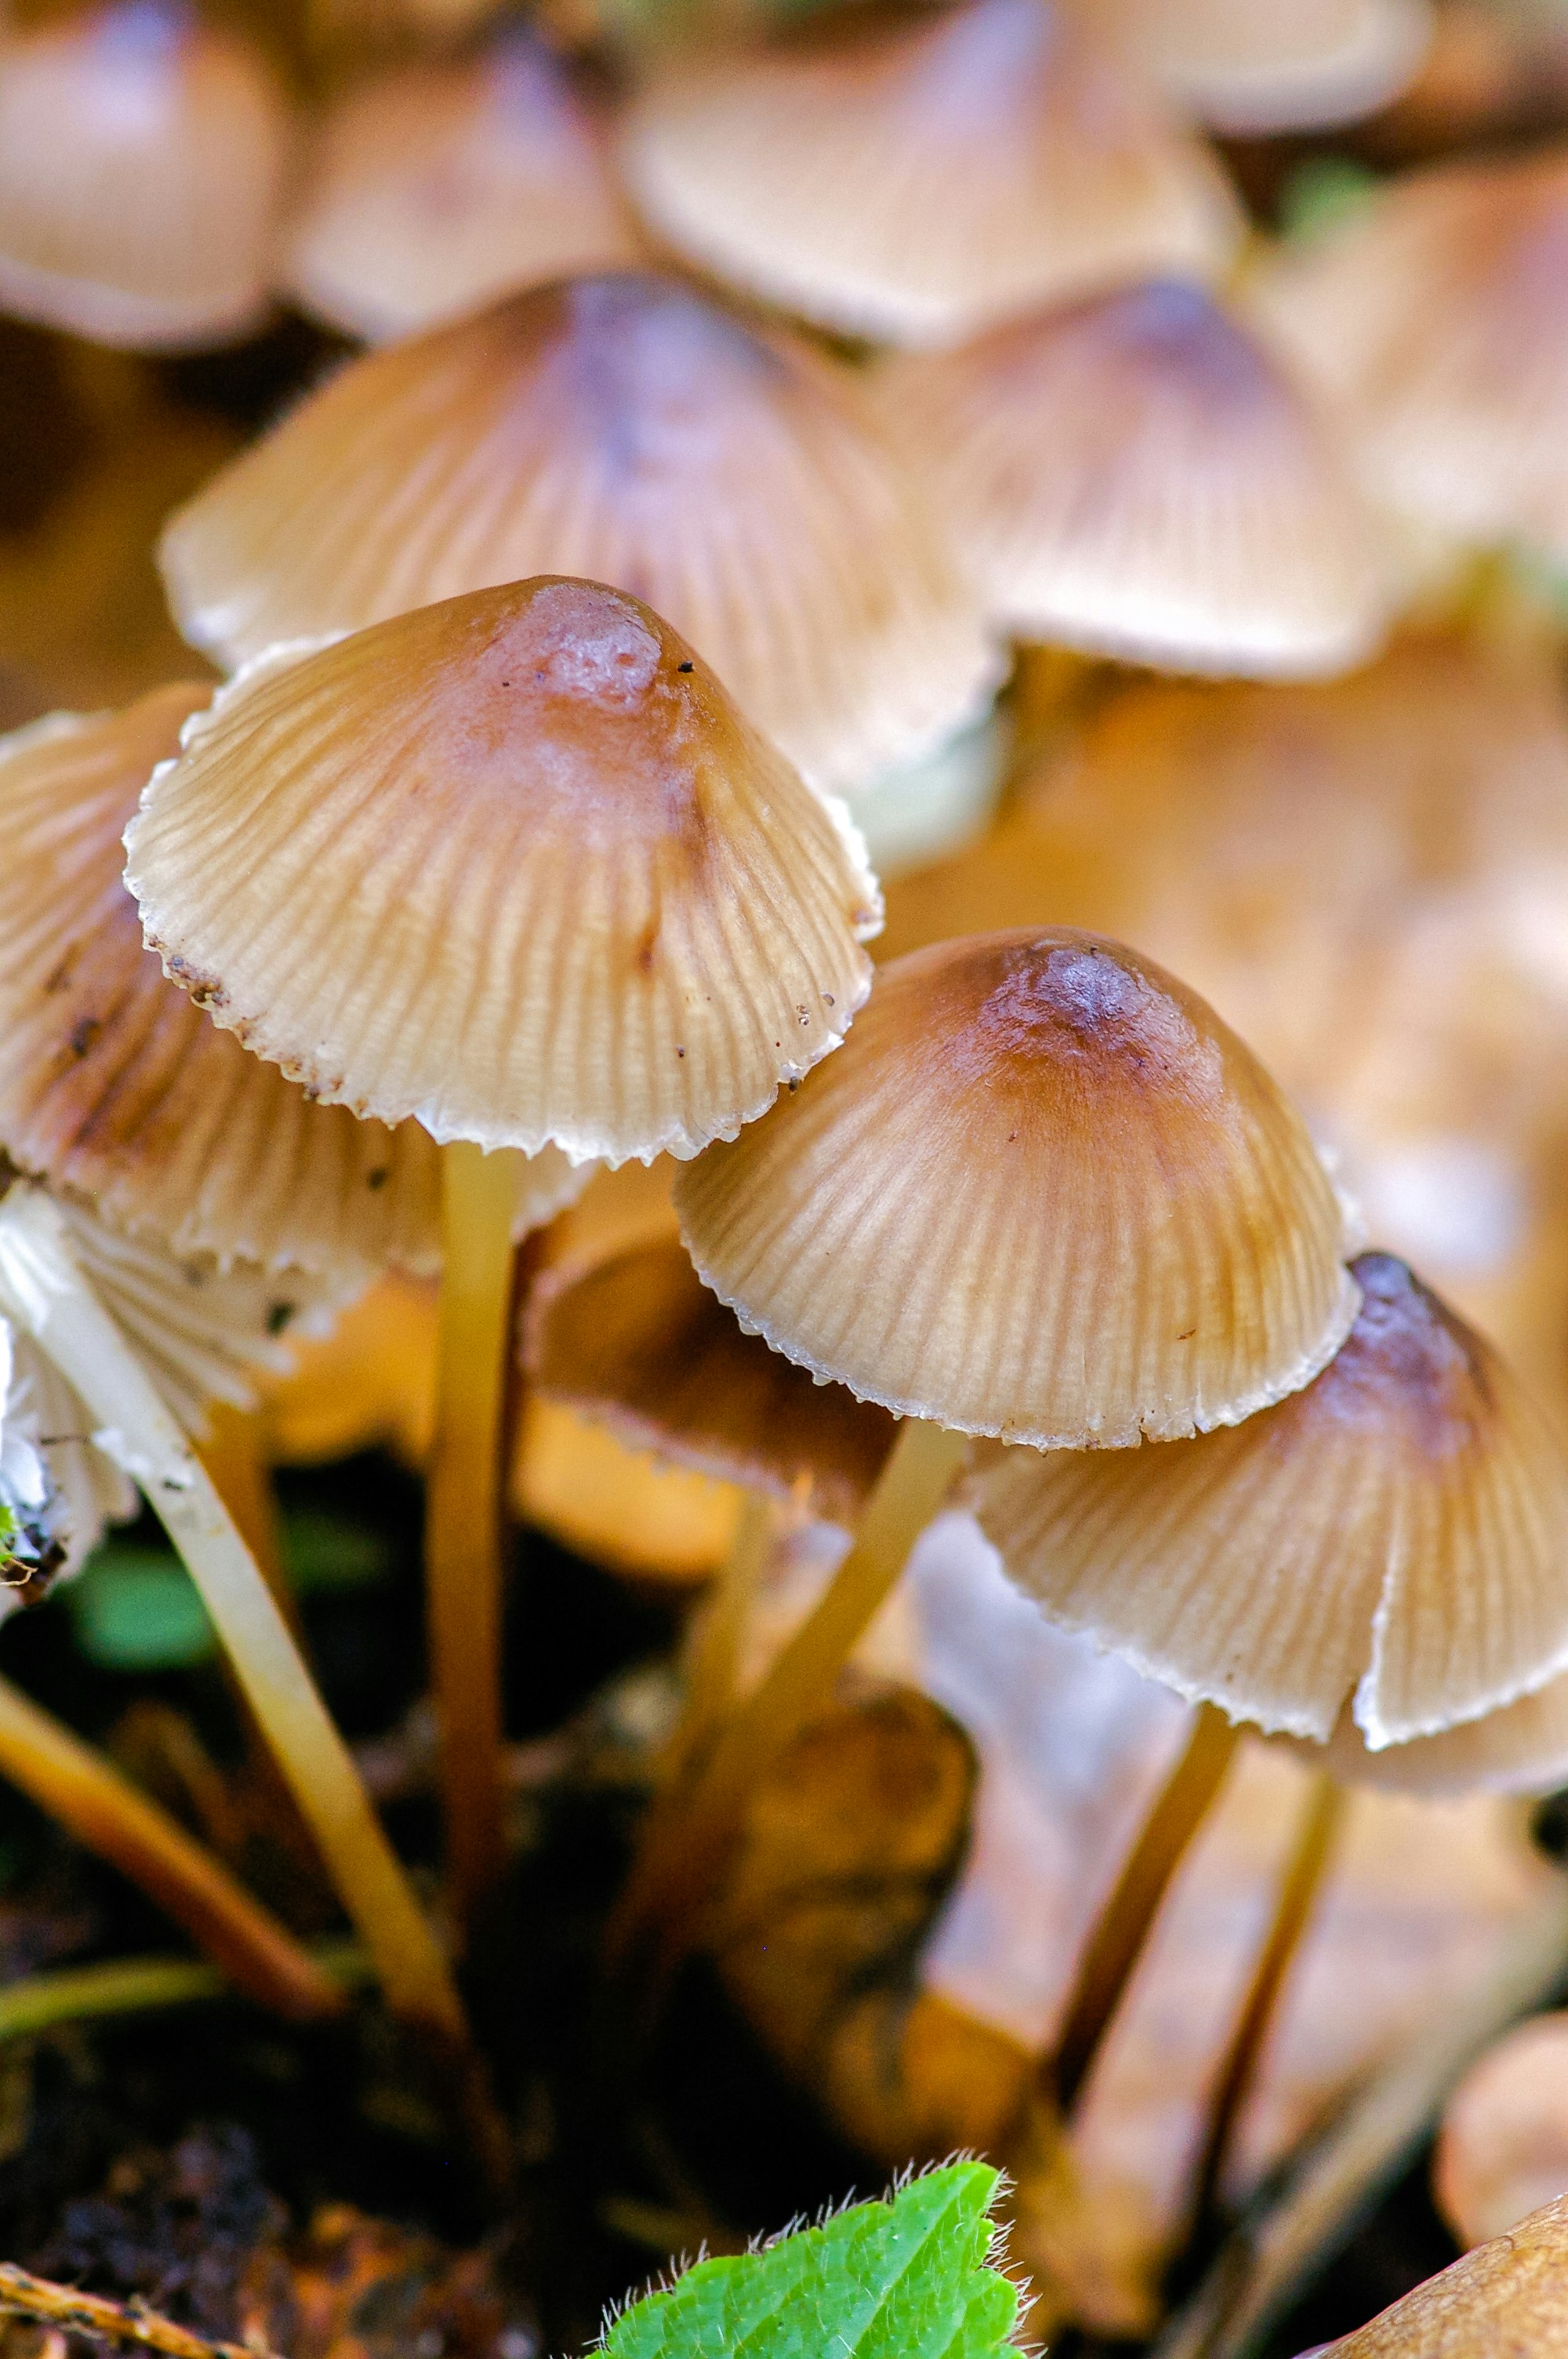 white and brown mushrooms in tilt shift lens